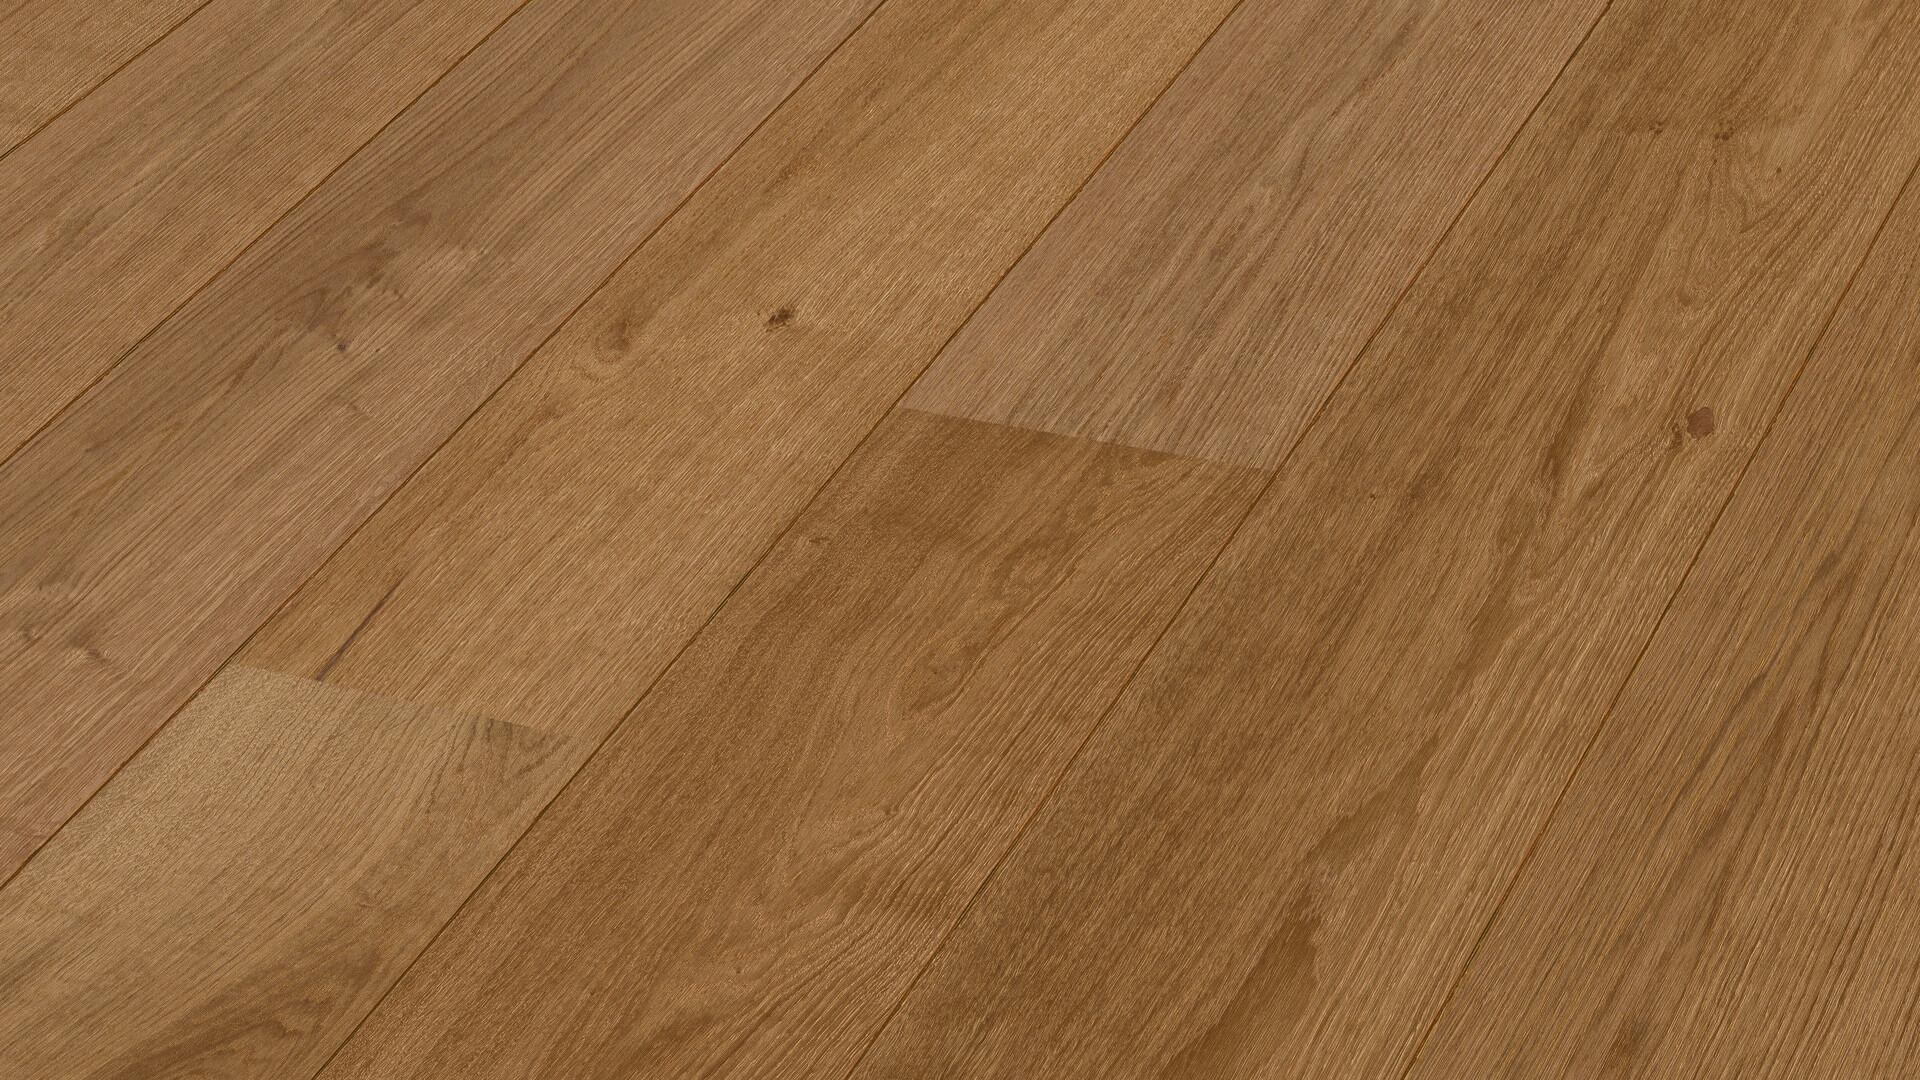 Lindura wood flooring HD 400 Natural terra brown oak 8909